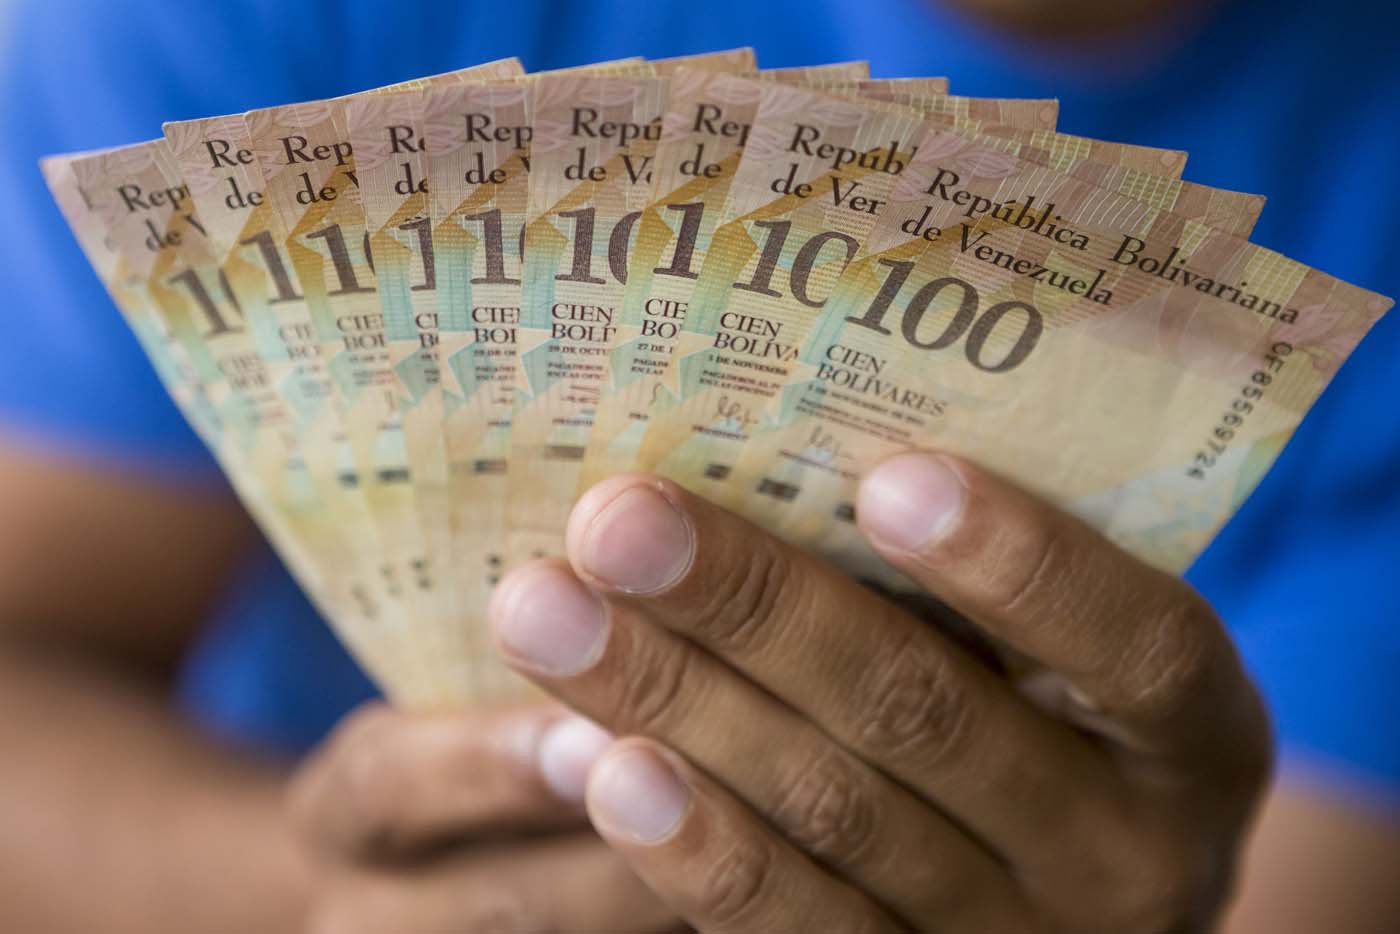 El Nuevo Herald:  Devastador pronóstico para Venezuela… La inflación superará el 30,000%